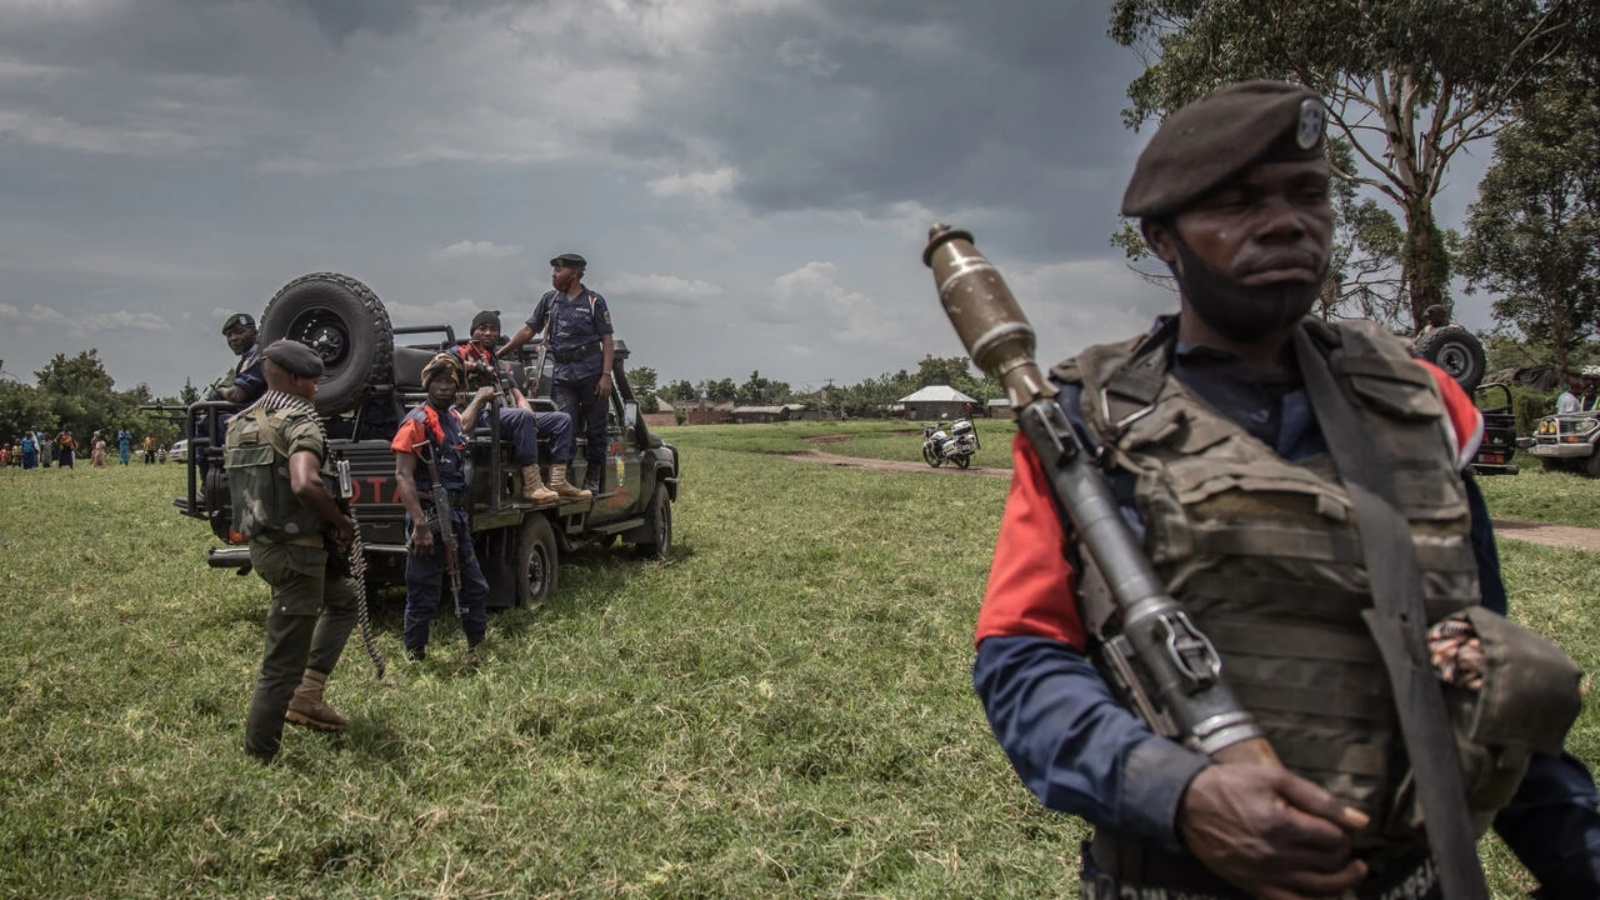 جنود من القوات المسلحة لجمهورية الكونغو الديمقراطية يقومون بدورية أمنية حول مطار كيوانجا بعد أيام من اشتباكات مع متمردي حركة 23 مارس في روتشورو بشرق جمهورية الكونغو الديمقراطية، في 3 أبريل 2022